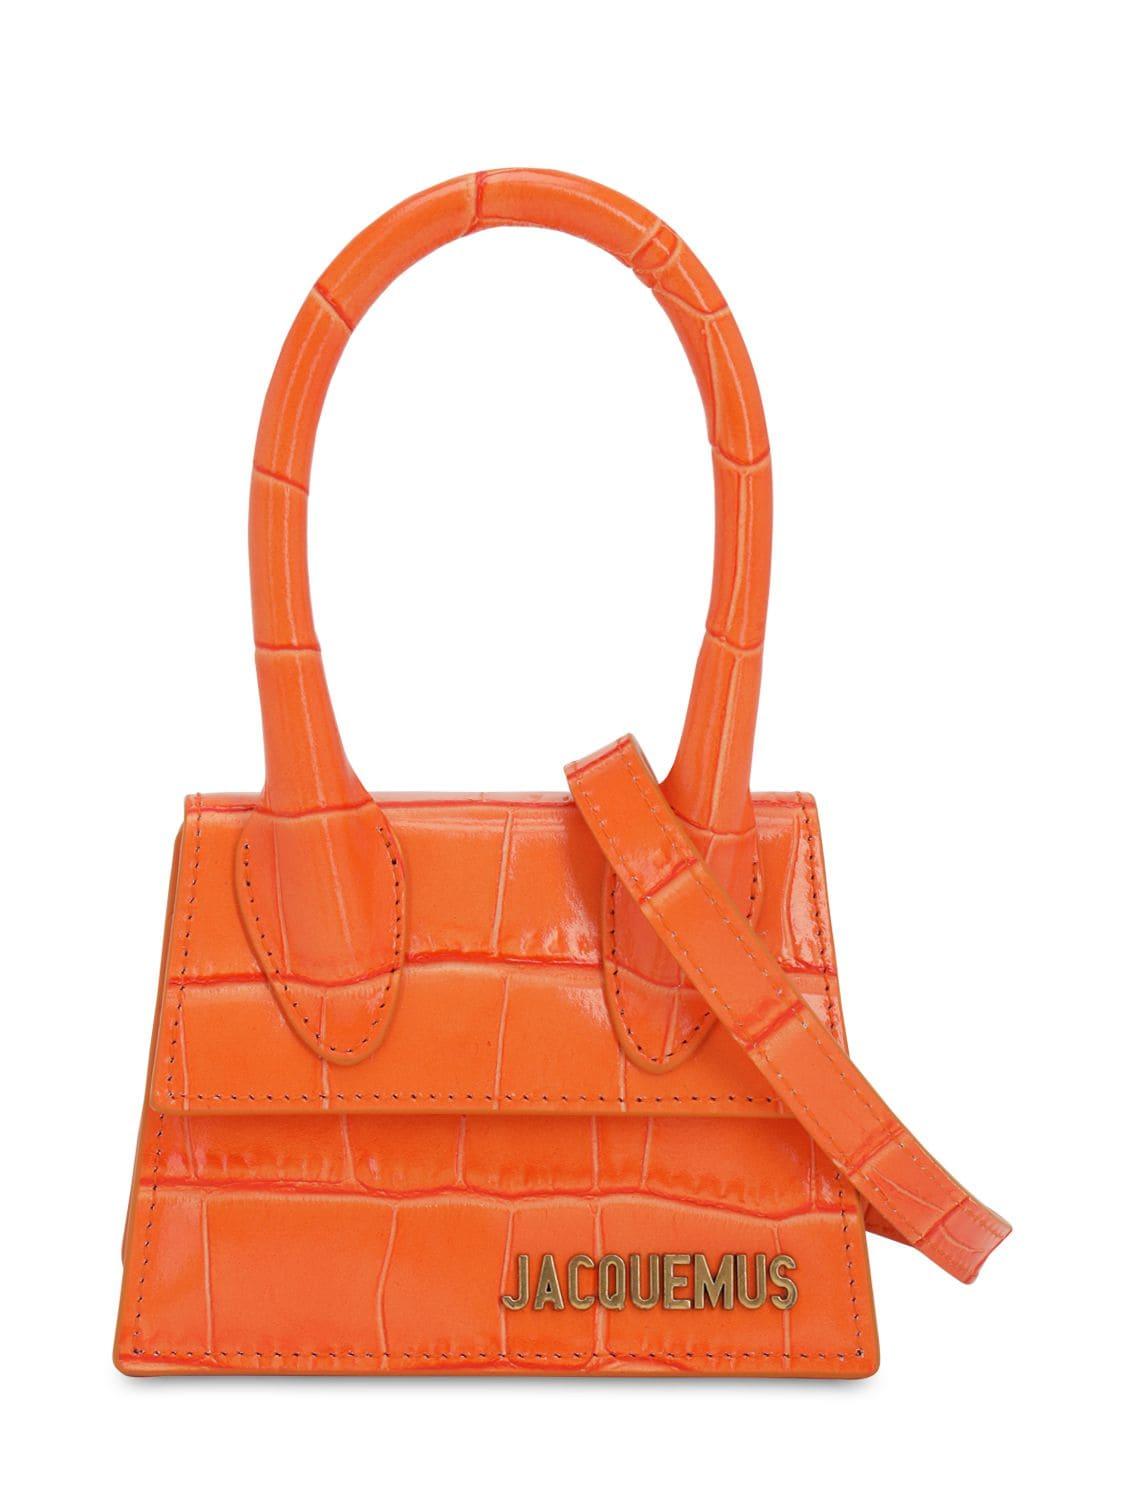 Jacquemus Le Chiquito Croc Print Leather Bag in Orange | Lyst